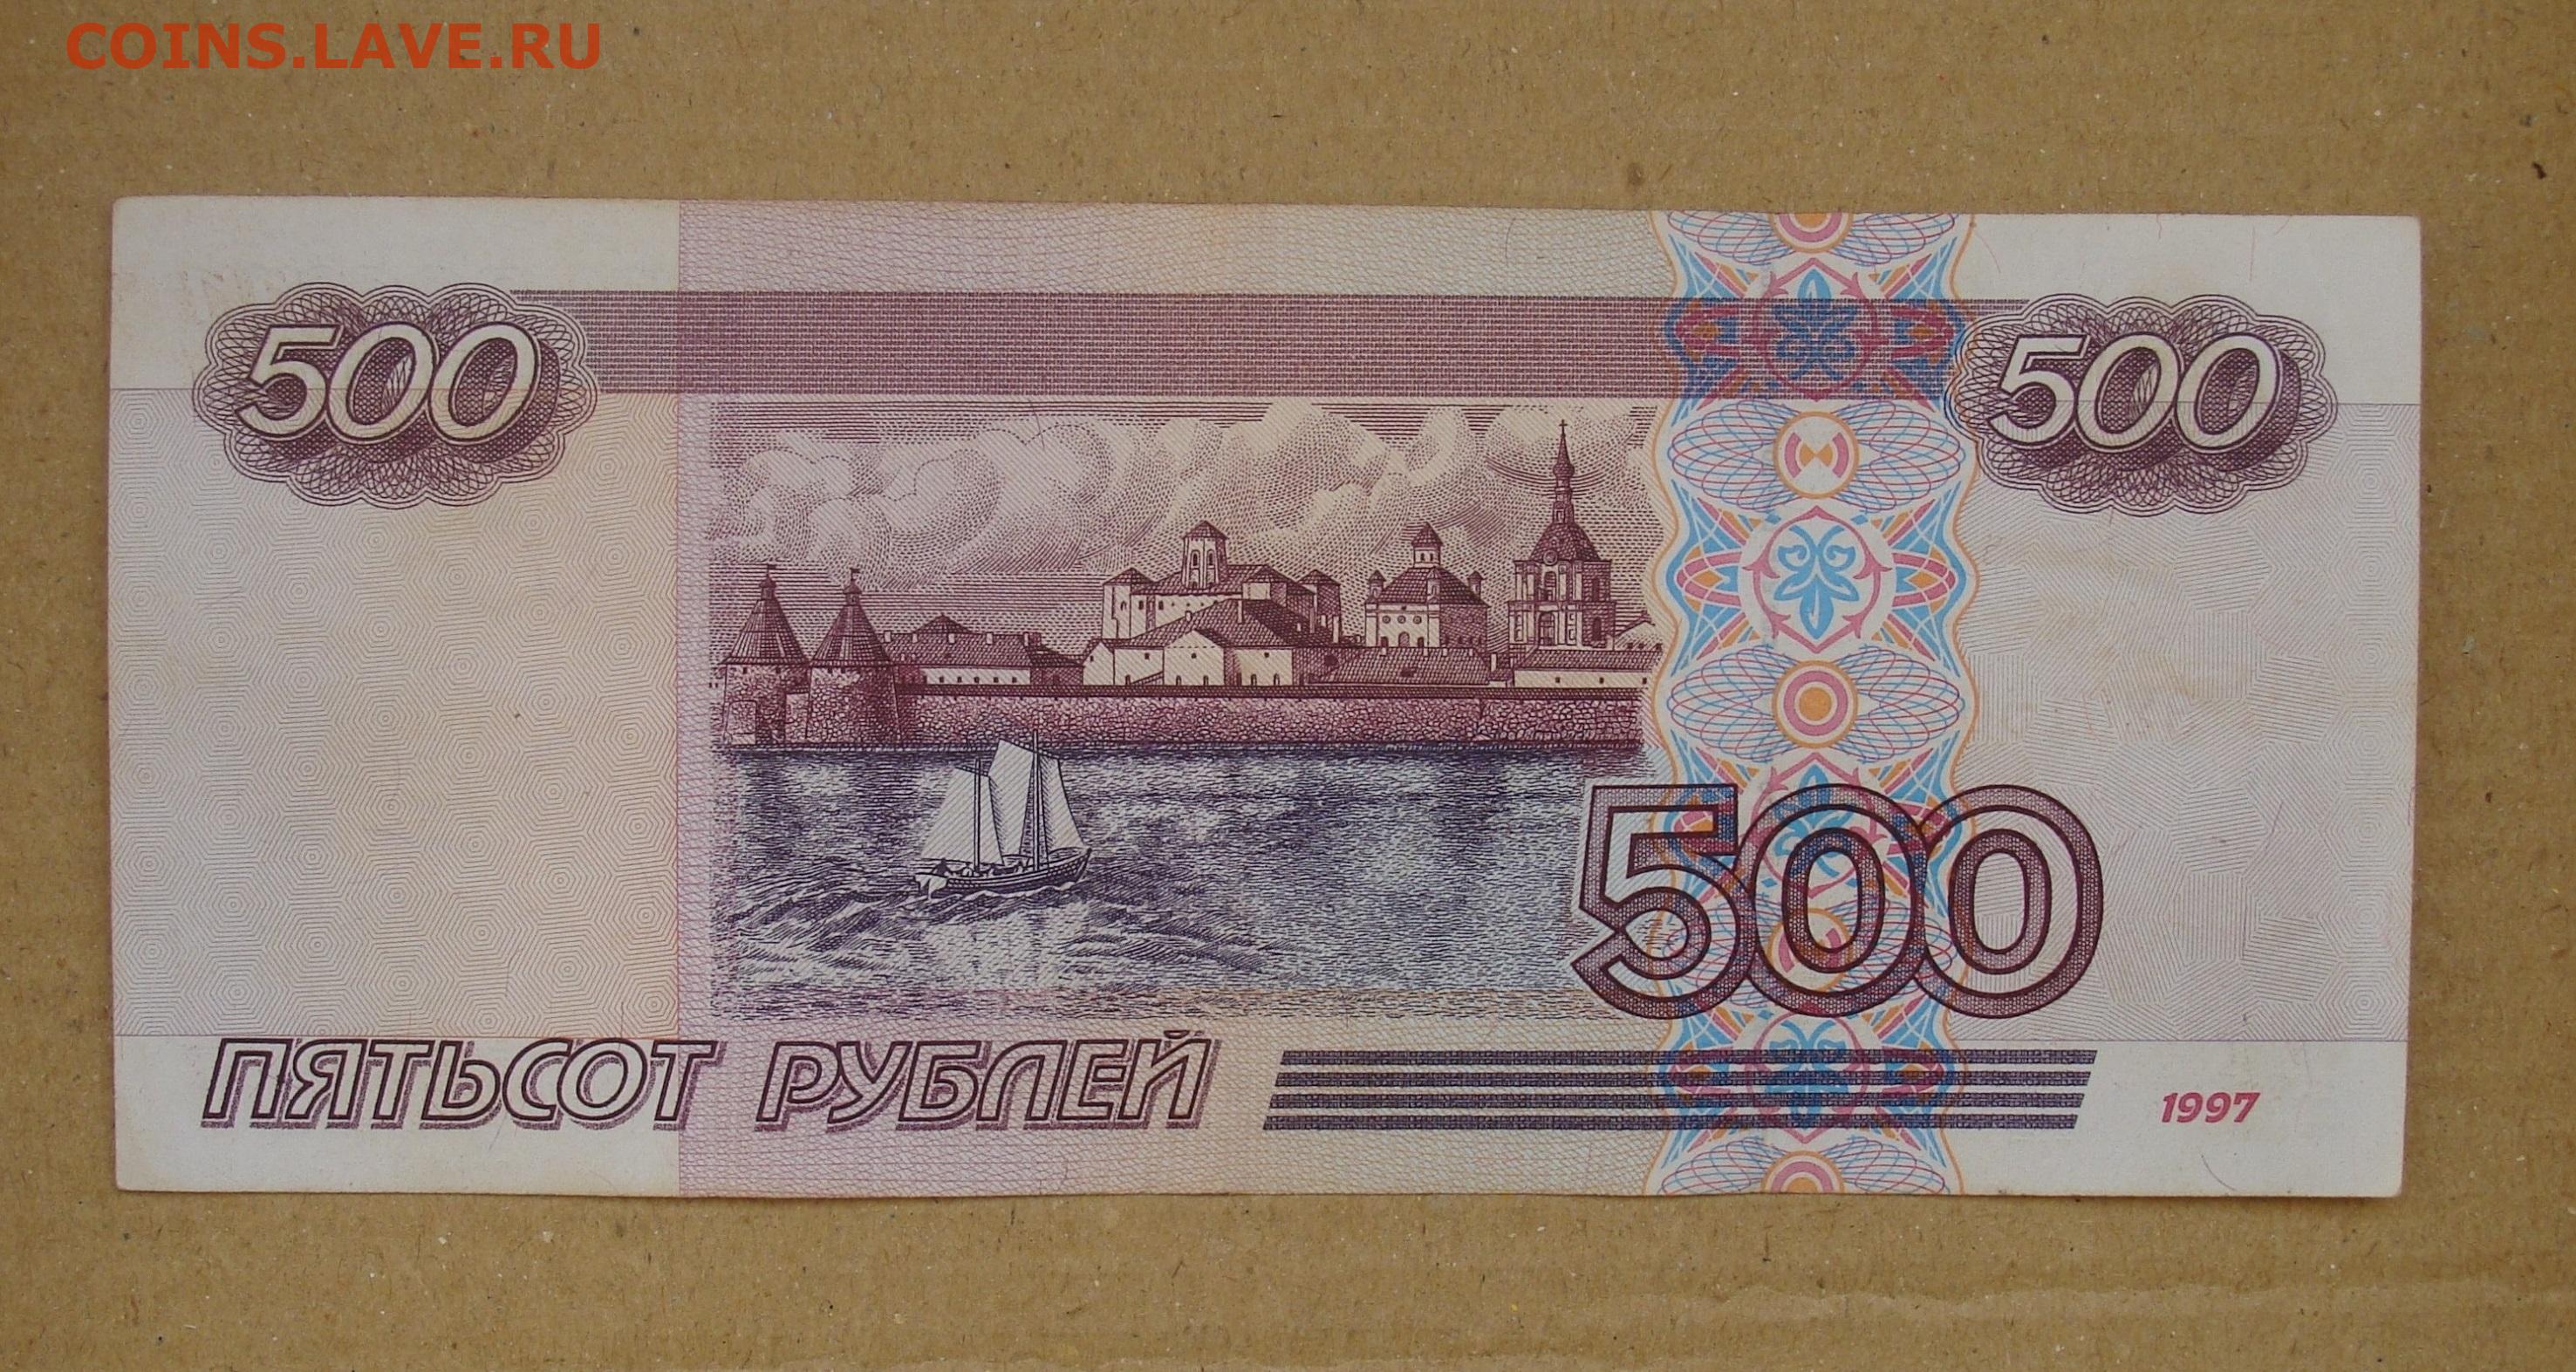 50 рублей 500 рублей. 500 Рублей. 500 Рублей 1997 без модификации. 500 Рублей 1997 модификация. Бумажные деньги 1997.